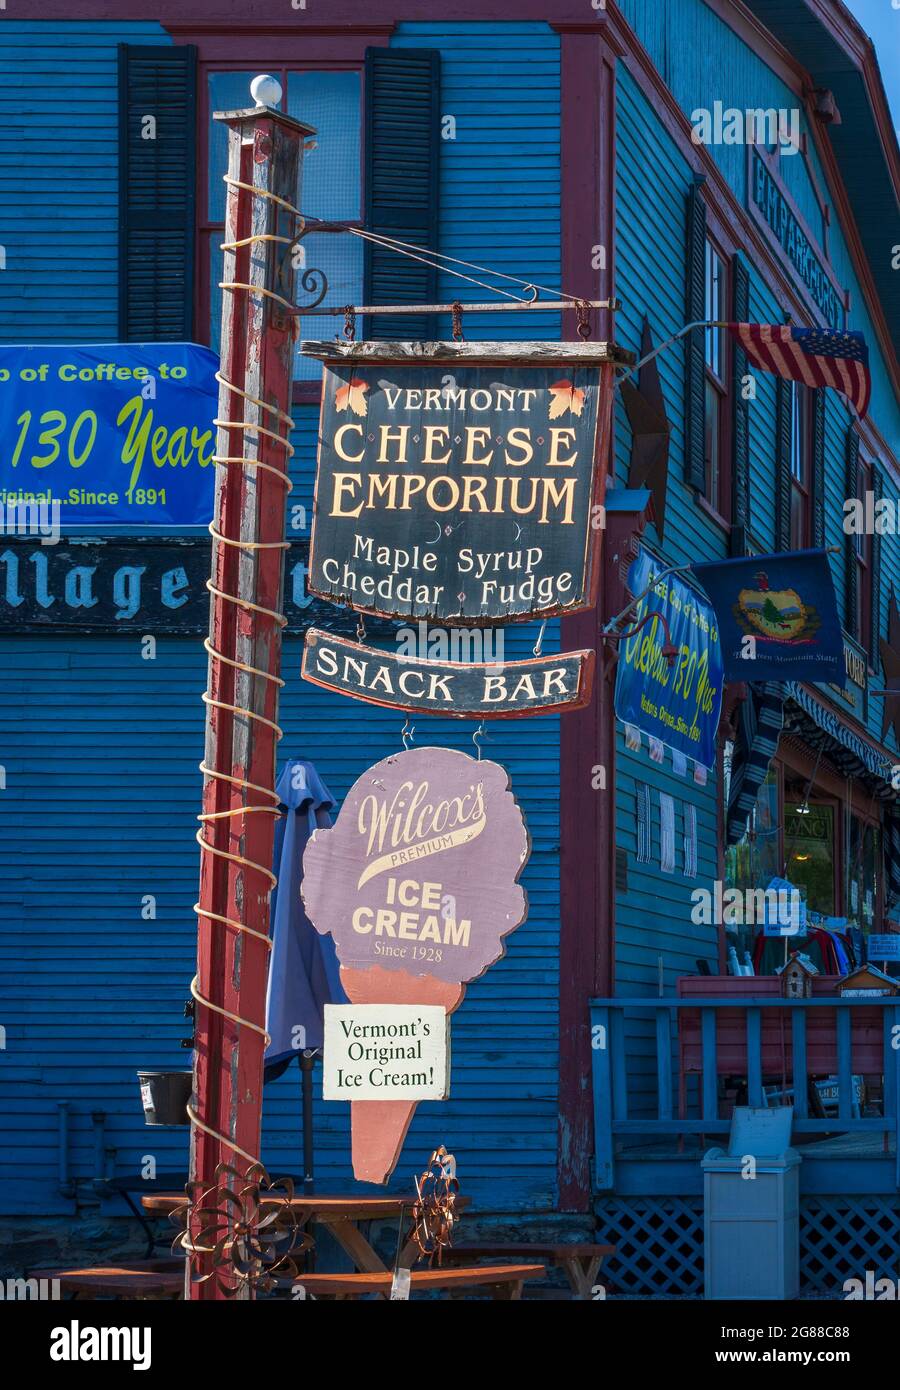 Post mit Schildern im Vintage-Country-Laden: Vermont Cheese Emporium und Wilcox's Premium Ice Cream. Weston Village Store, Weston, Vermont, USA. Stockfoto